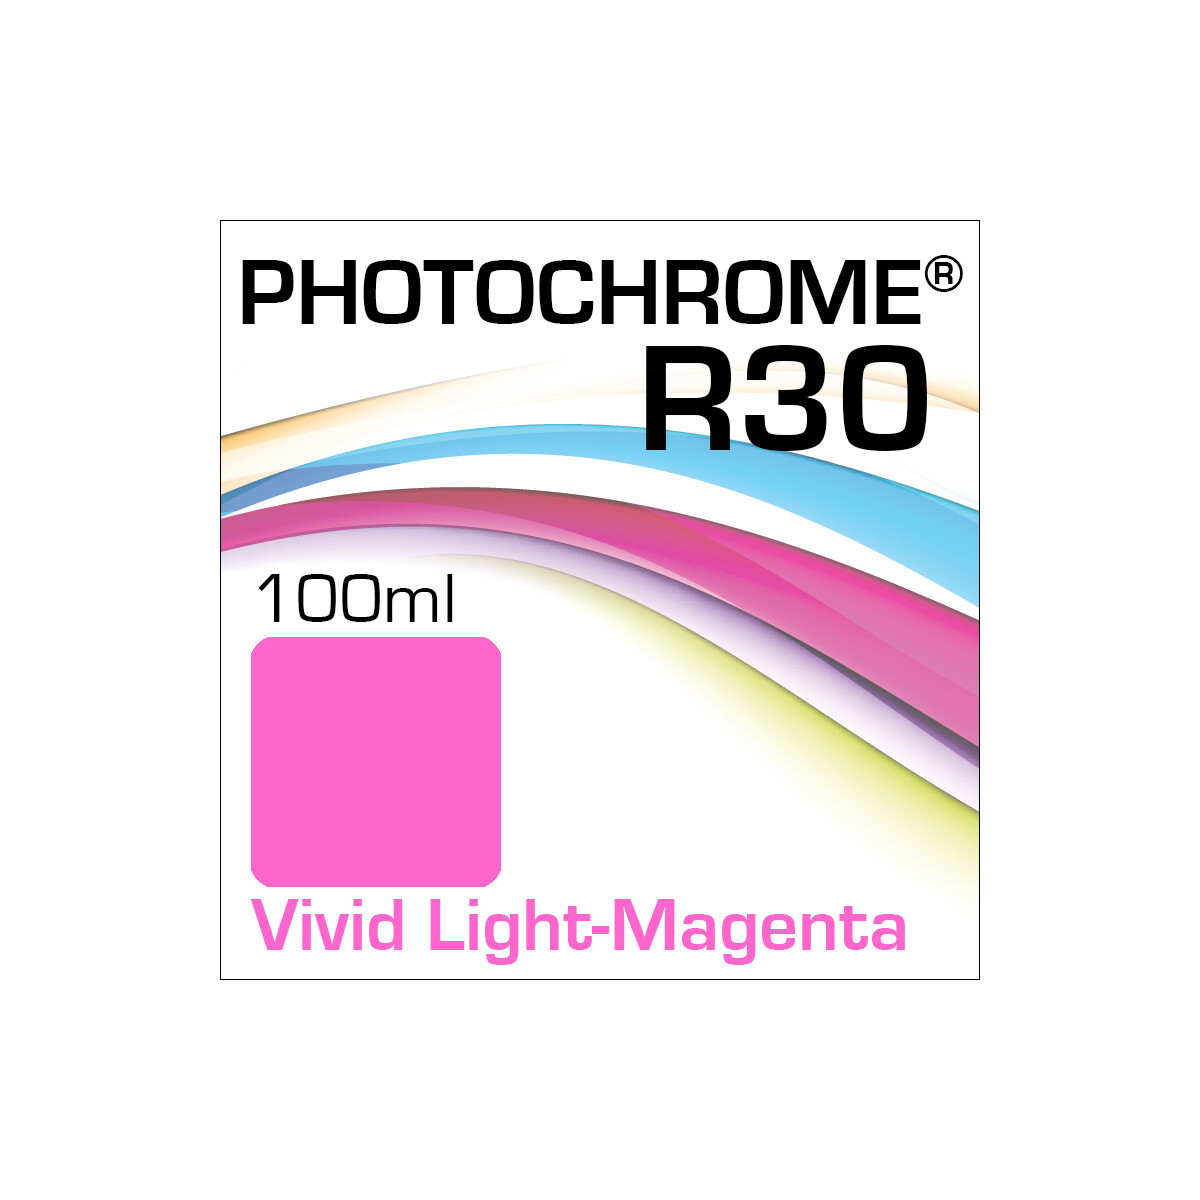 Lyson Photochrome R30 Bottle Vivid Light-Magenta 100ml (EOL)